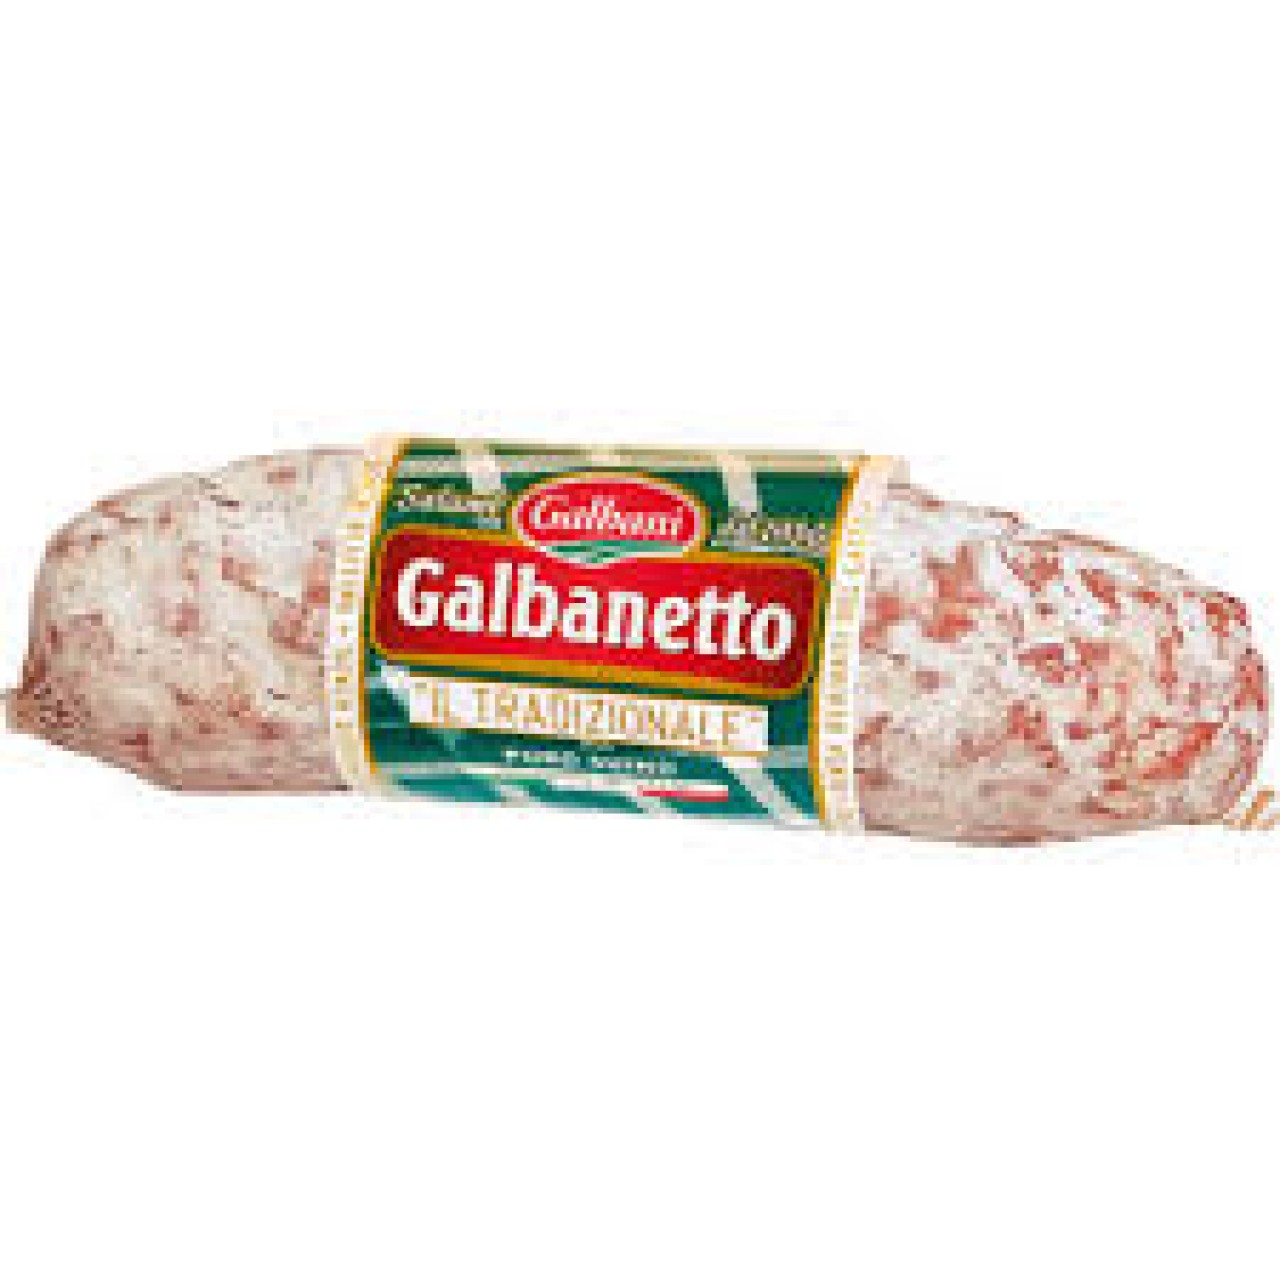 SALAME GALBANETTO GALBANI GR.140